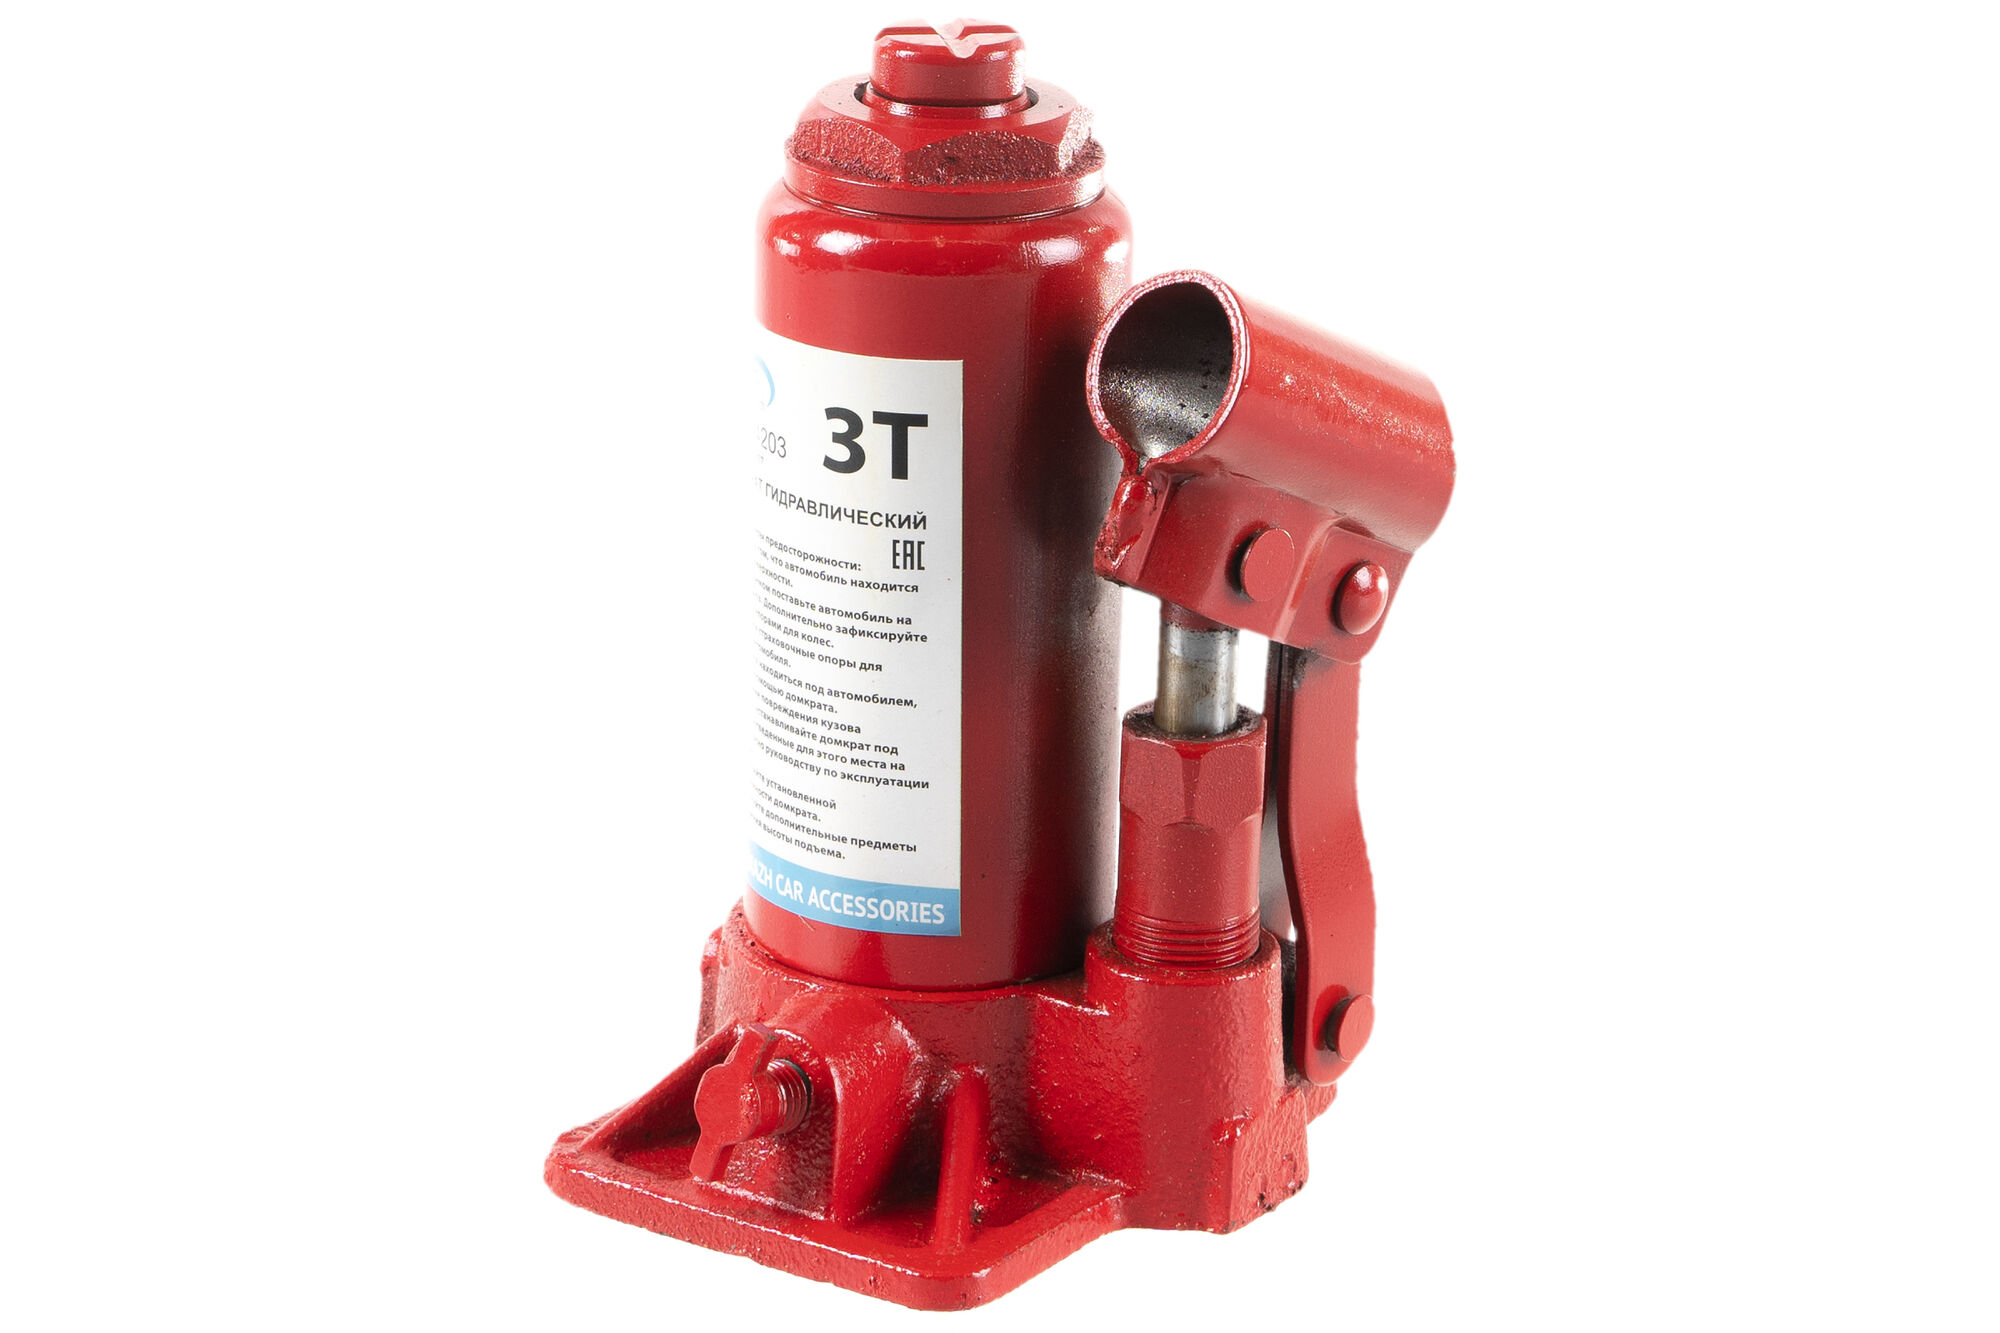 Гидравлический бутылочный домкрат 3 т в коробке /красный/ AUTOVIRAZH AV-074203